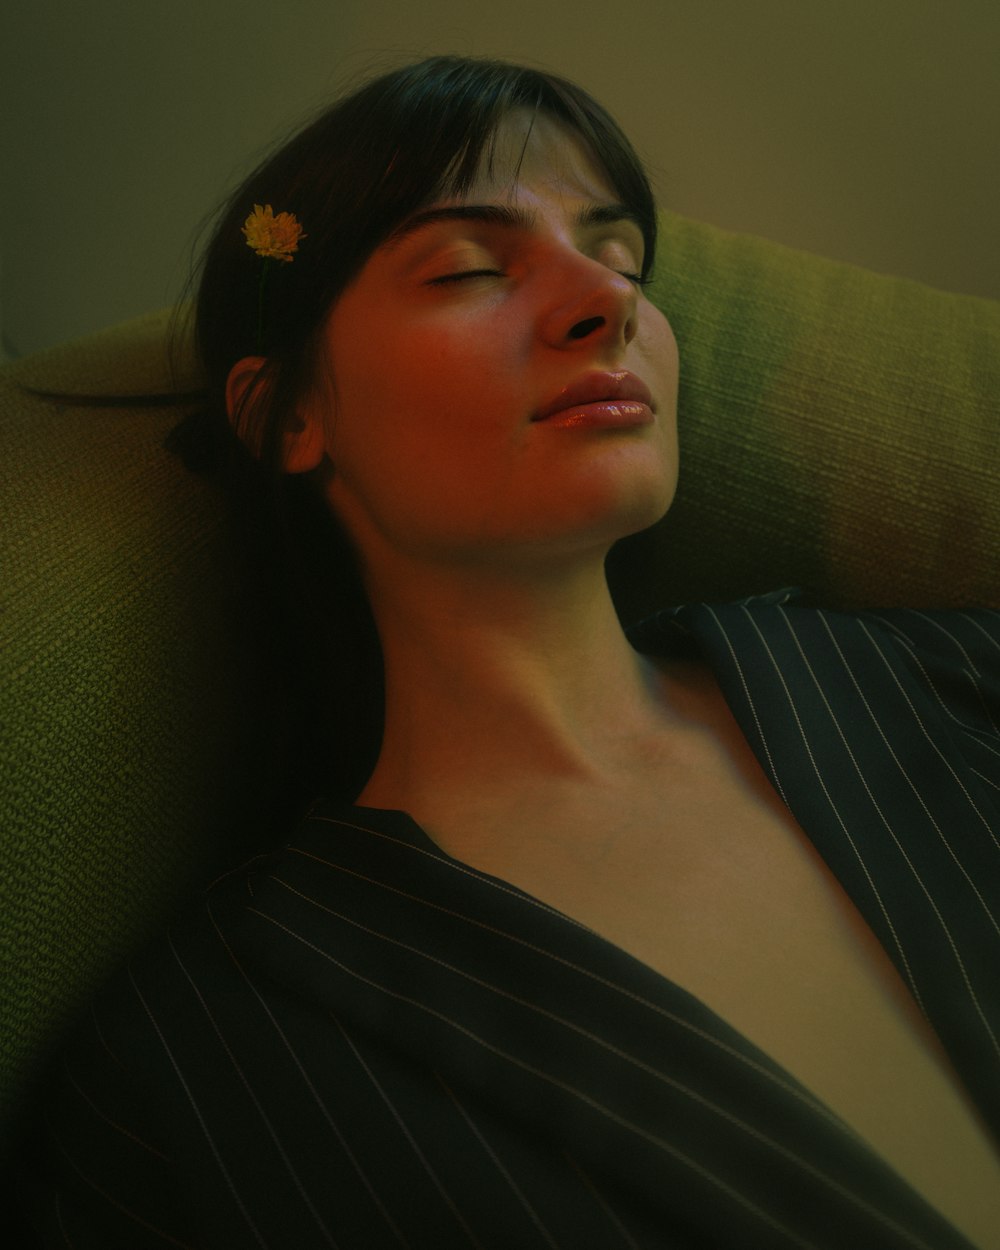 une femme dormant sur un canapé avec une fleur dans les cheveux